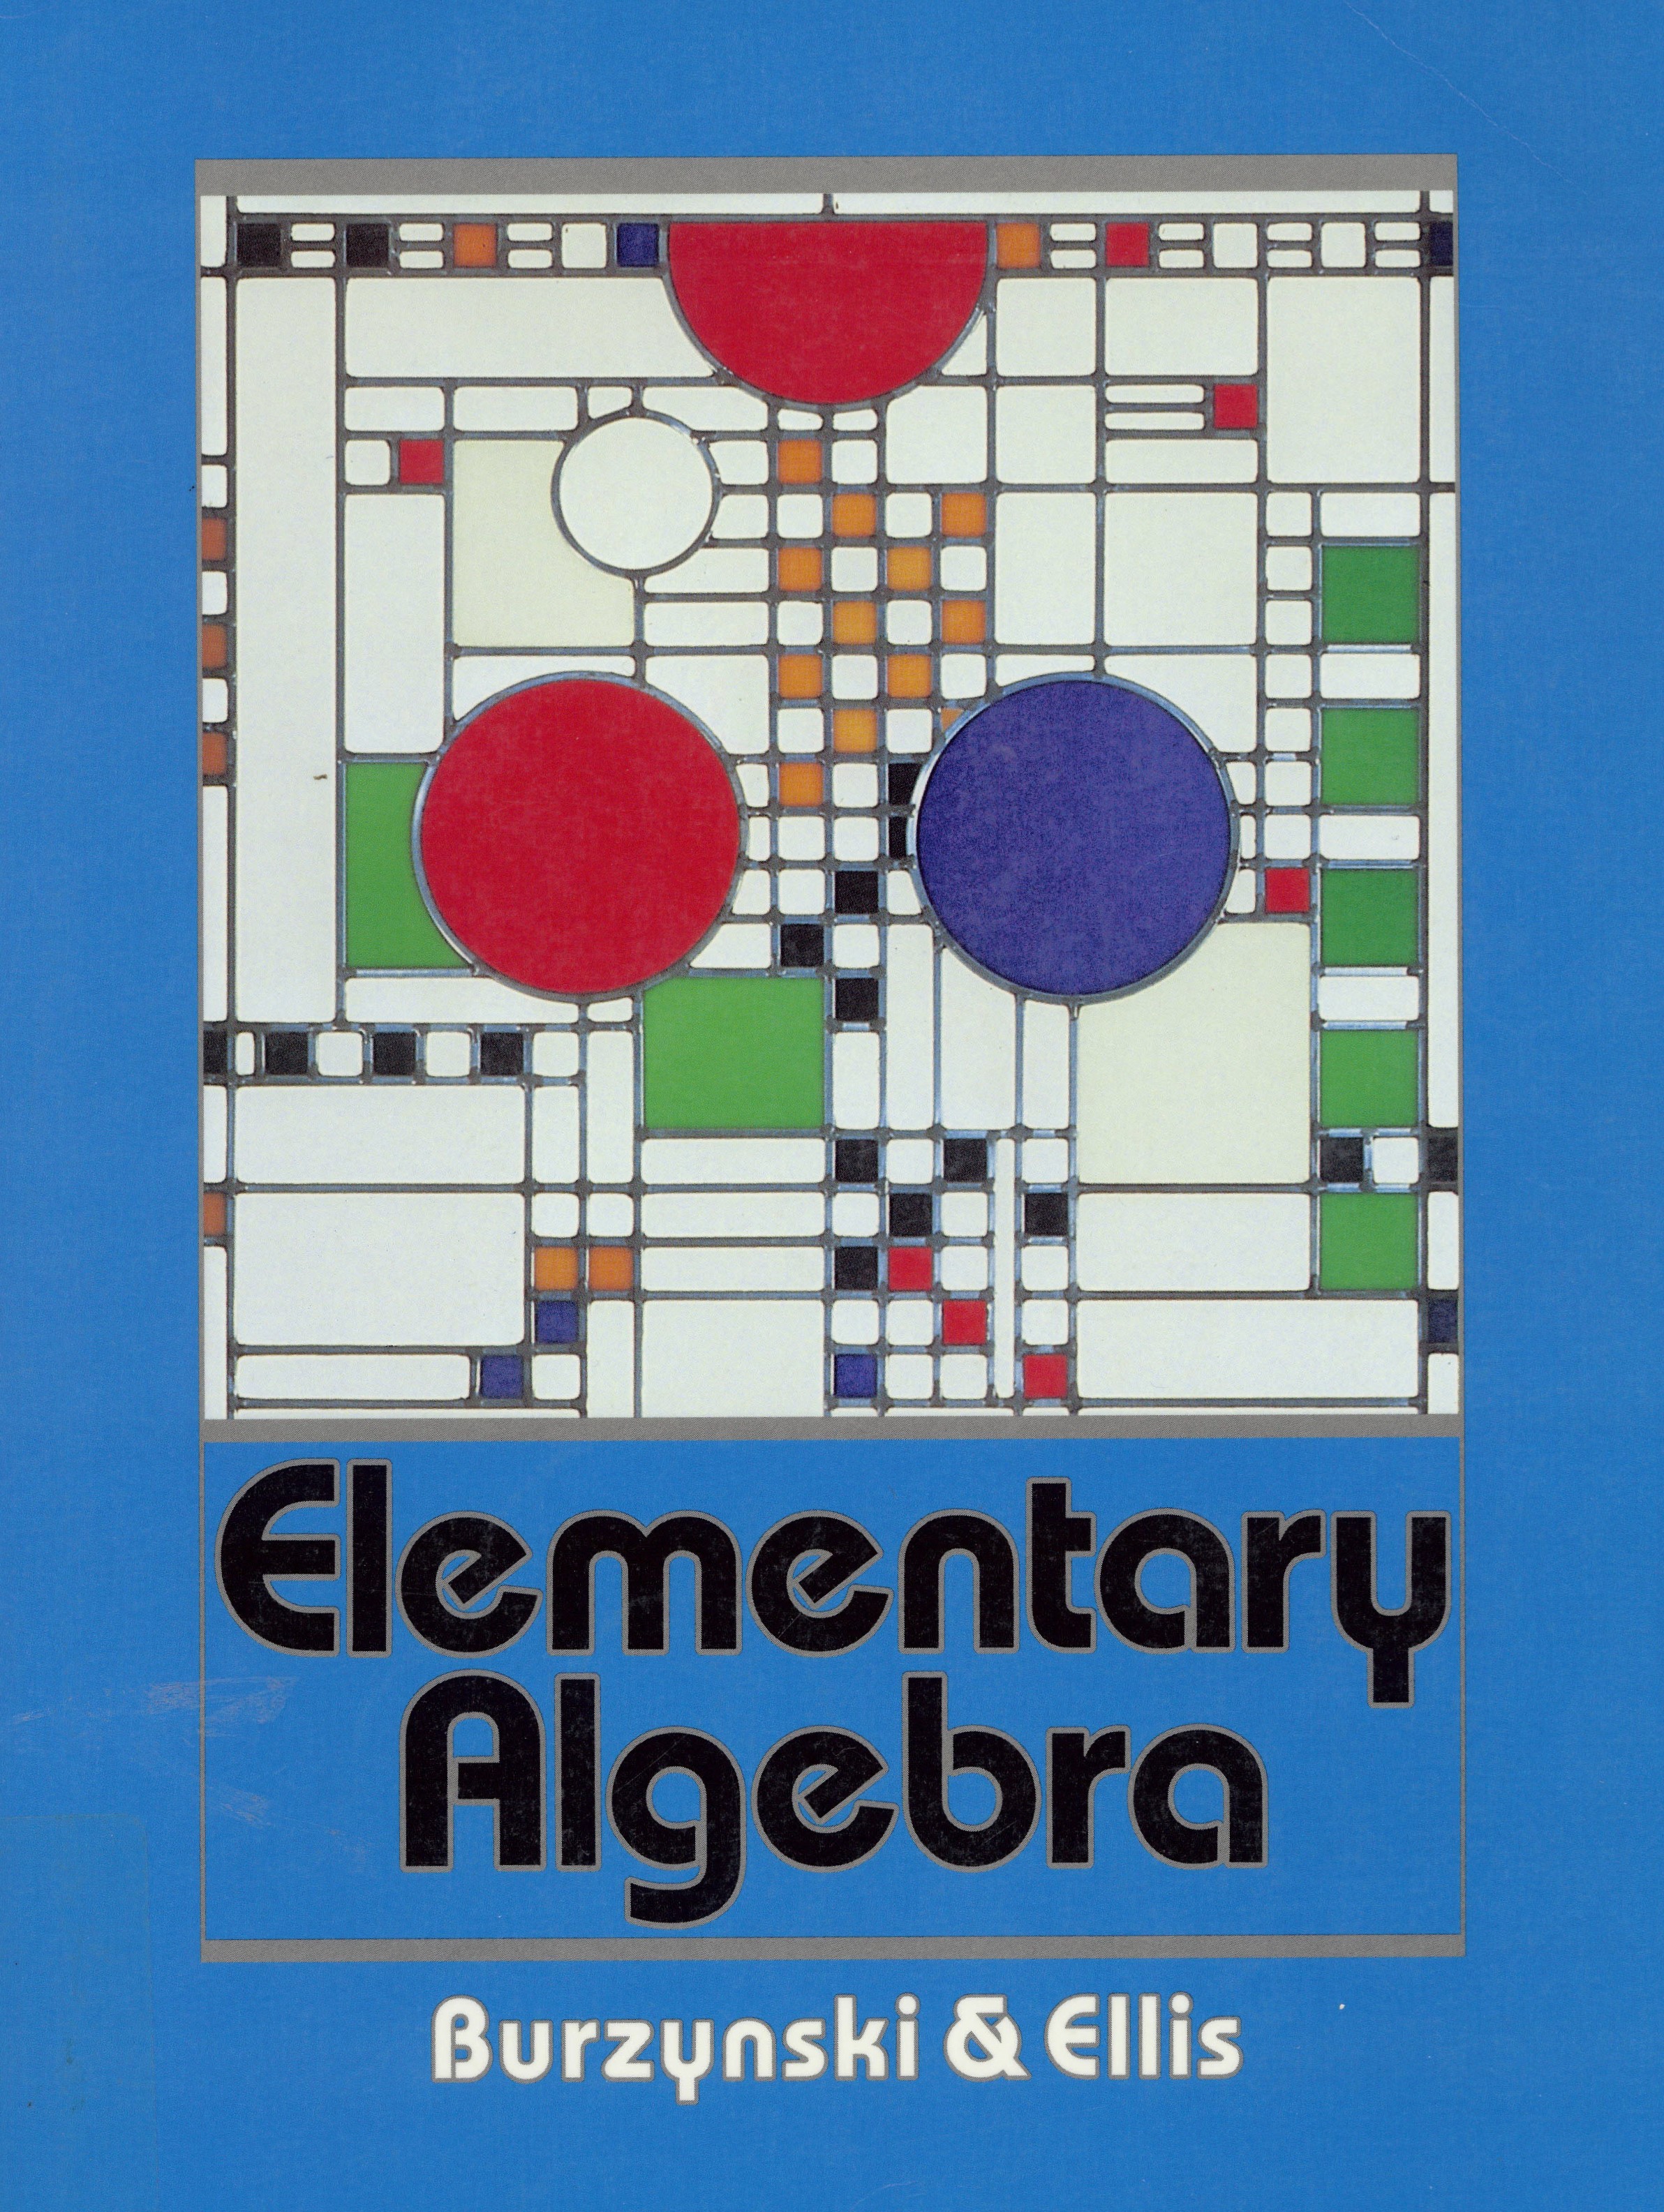 Elementary algebra